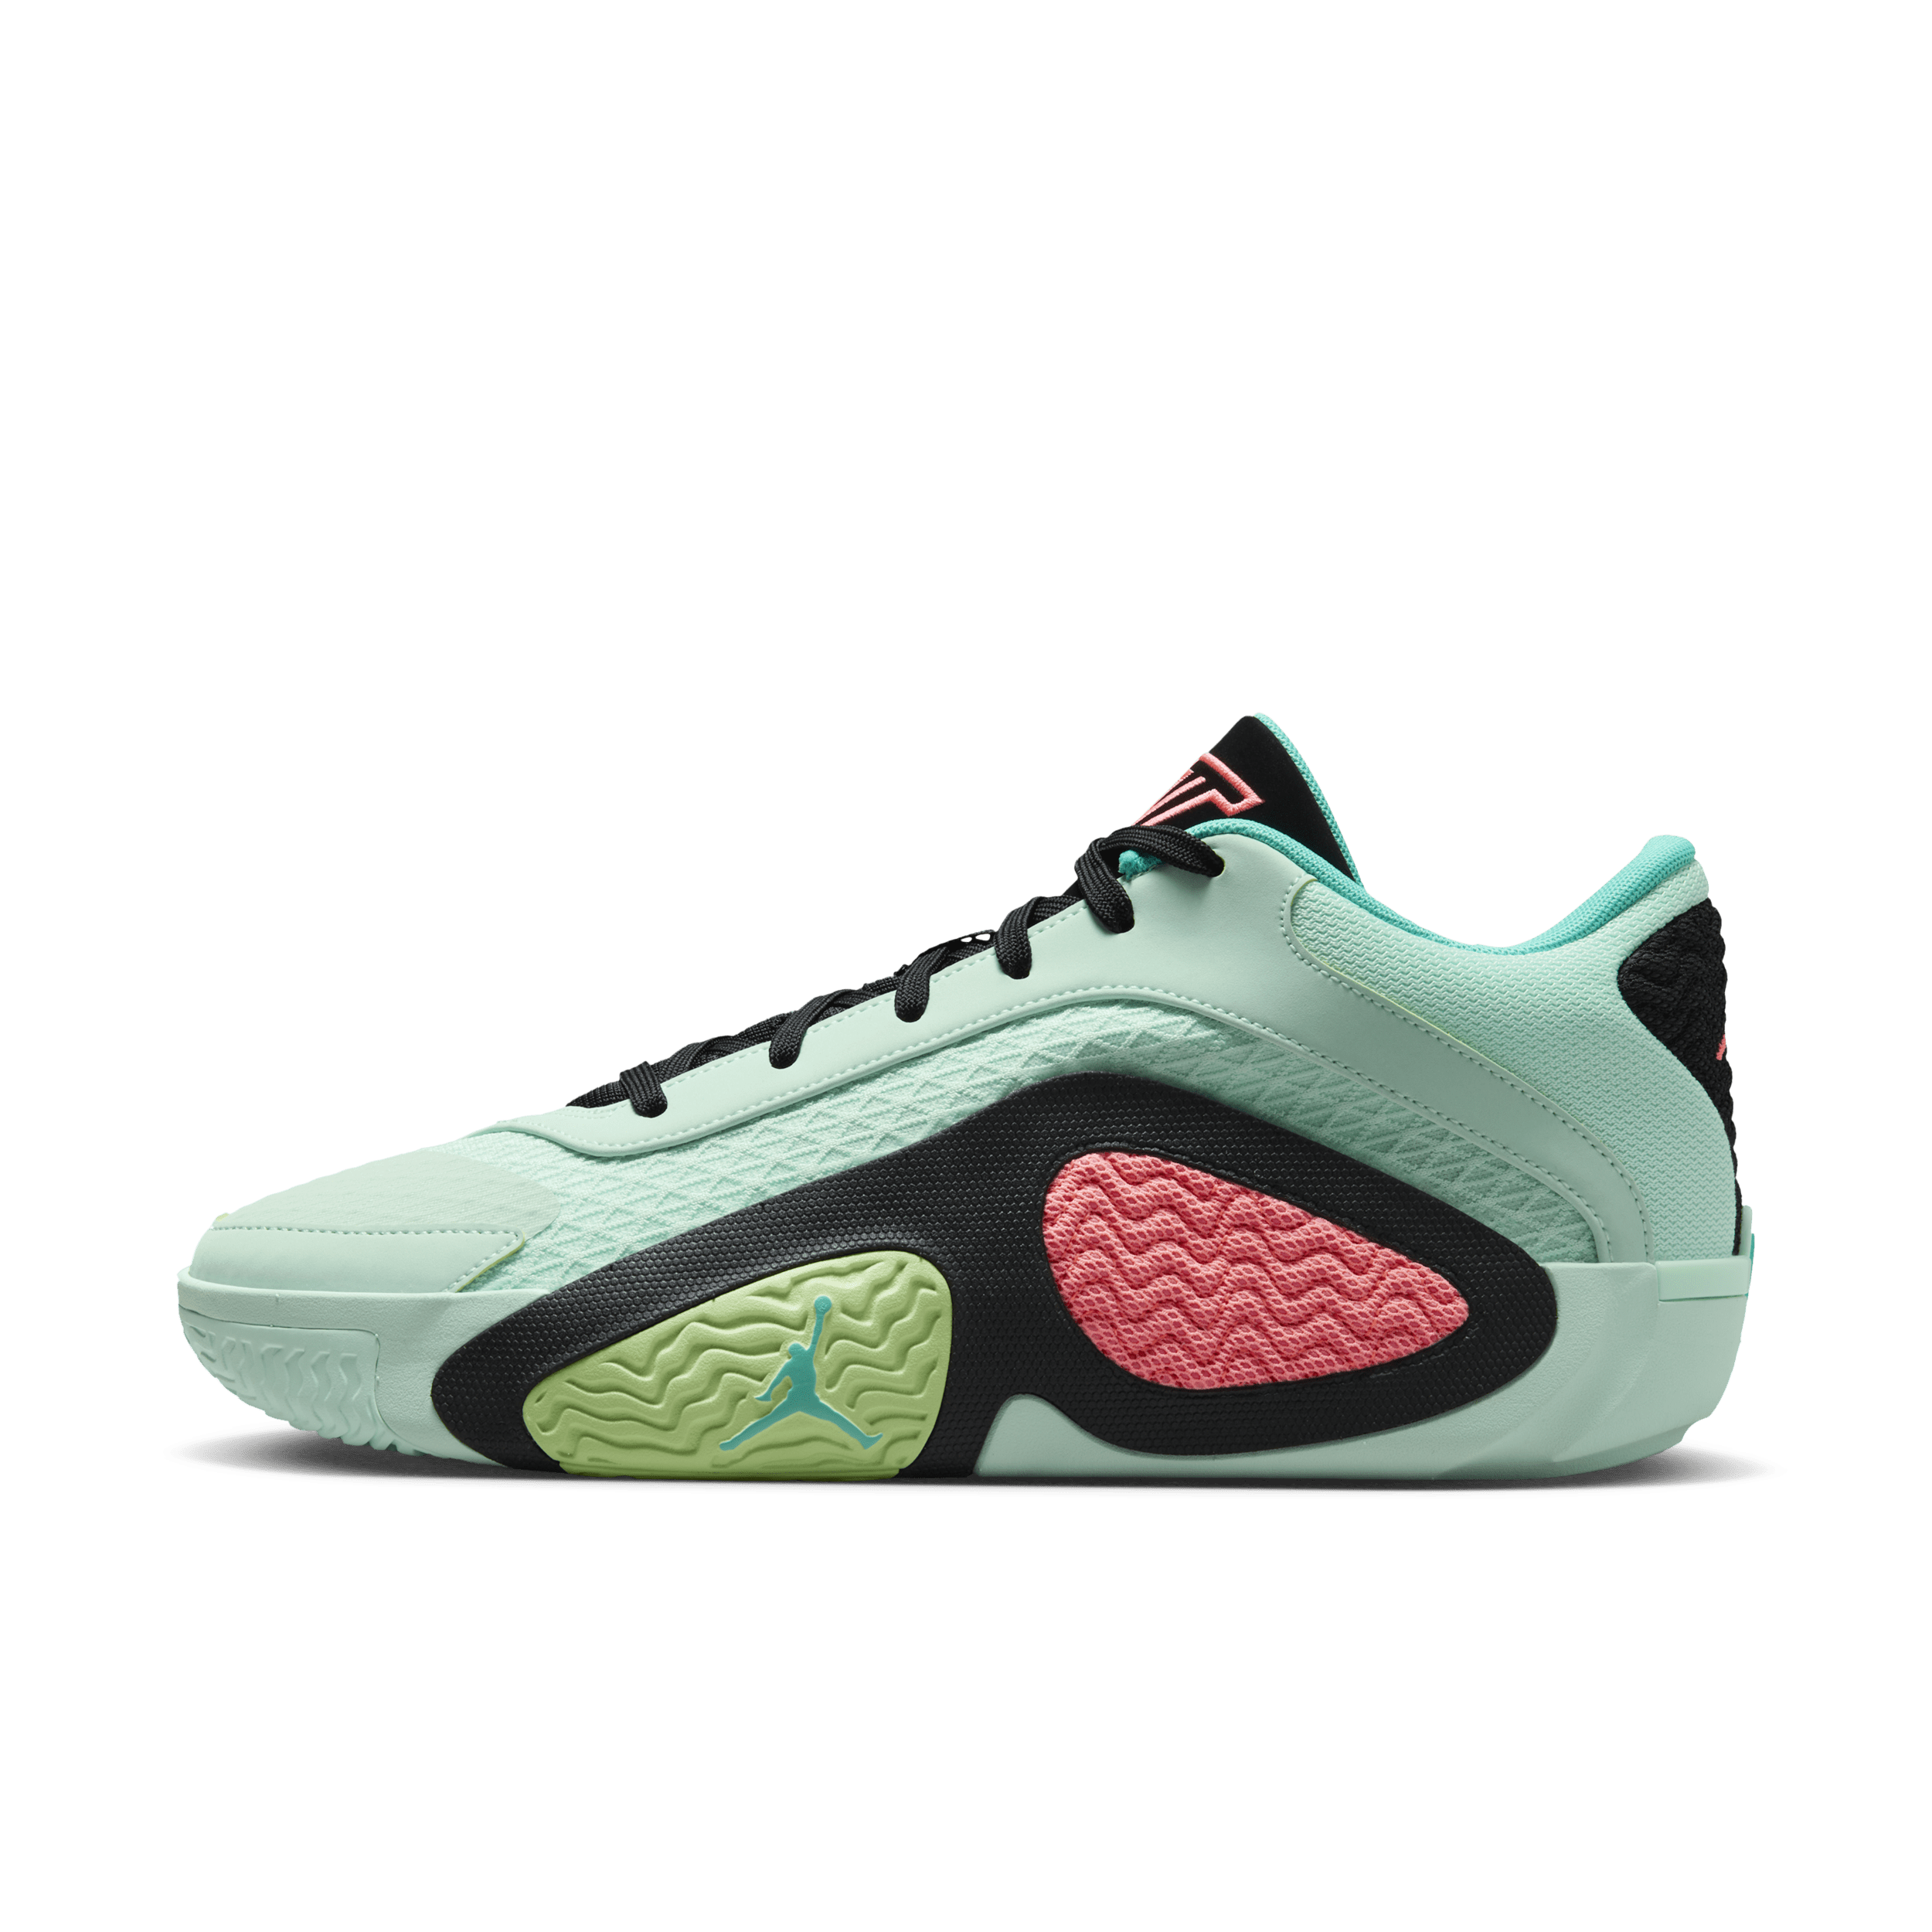 Nike Tatum 2 'Vortex' basketbalschoenen - Groen